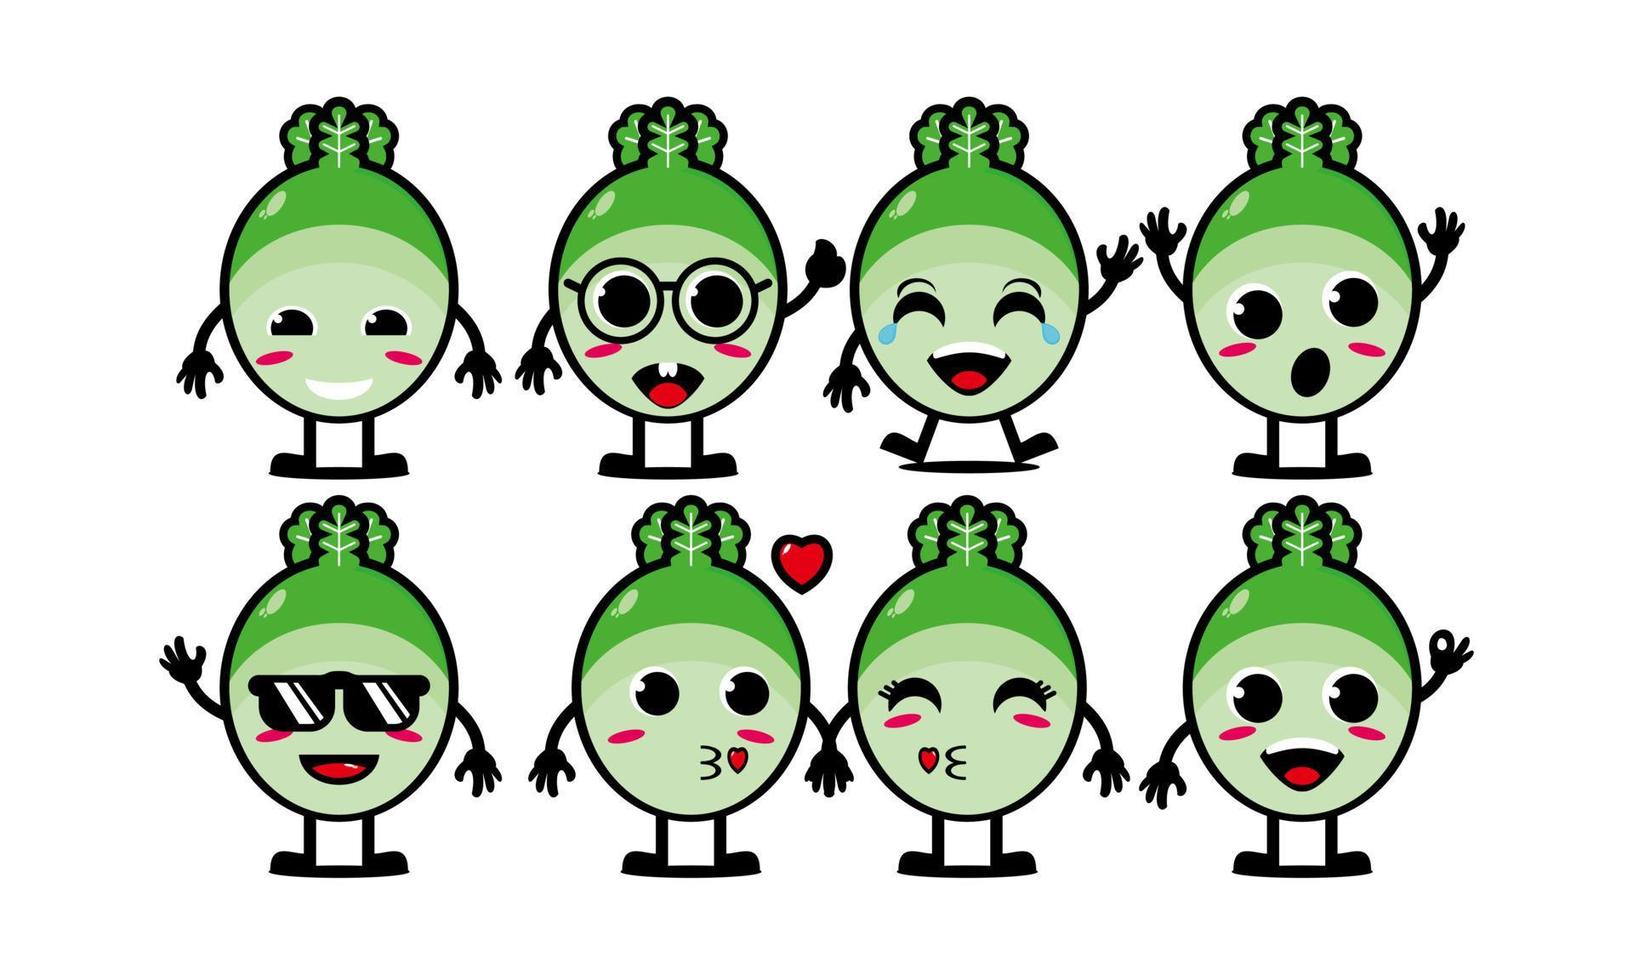 coleção de conjunto de vegetais de repolho engraçado sorridente bonito ilustração de mascote de personagem de cara de desenho animado plana vetorial isolada no fundo branco vetor